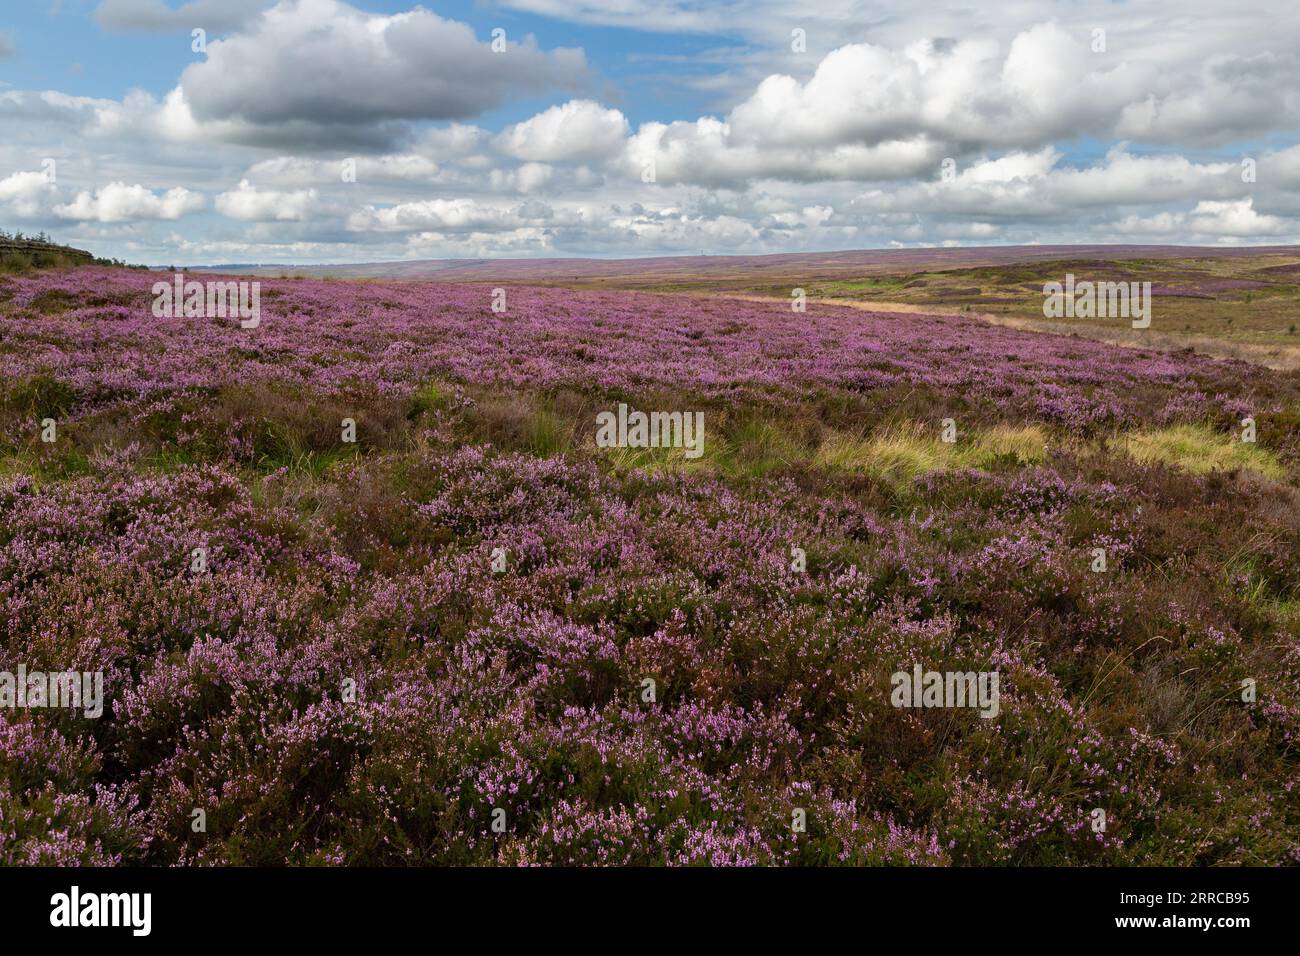 Heather (ling, Calluna vulgaris) moorland. Rombalds Moor (Ilkley Moor) in Yorkshire. Stock Photo